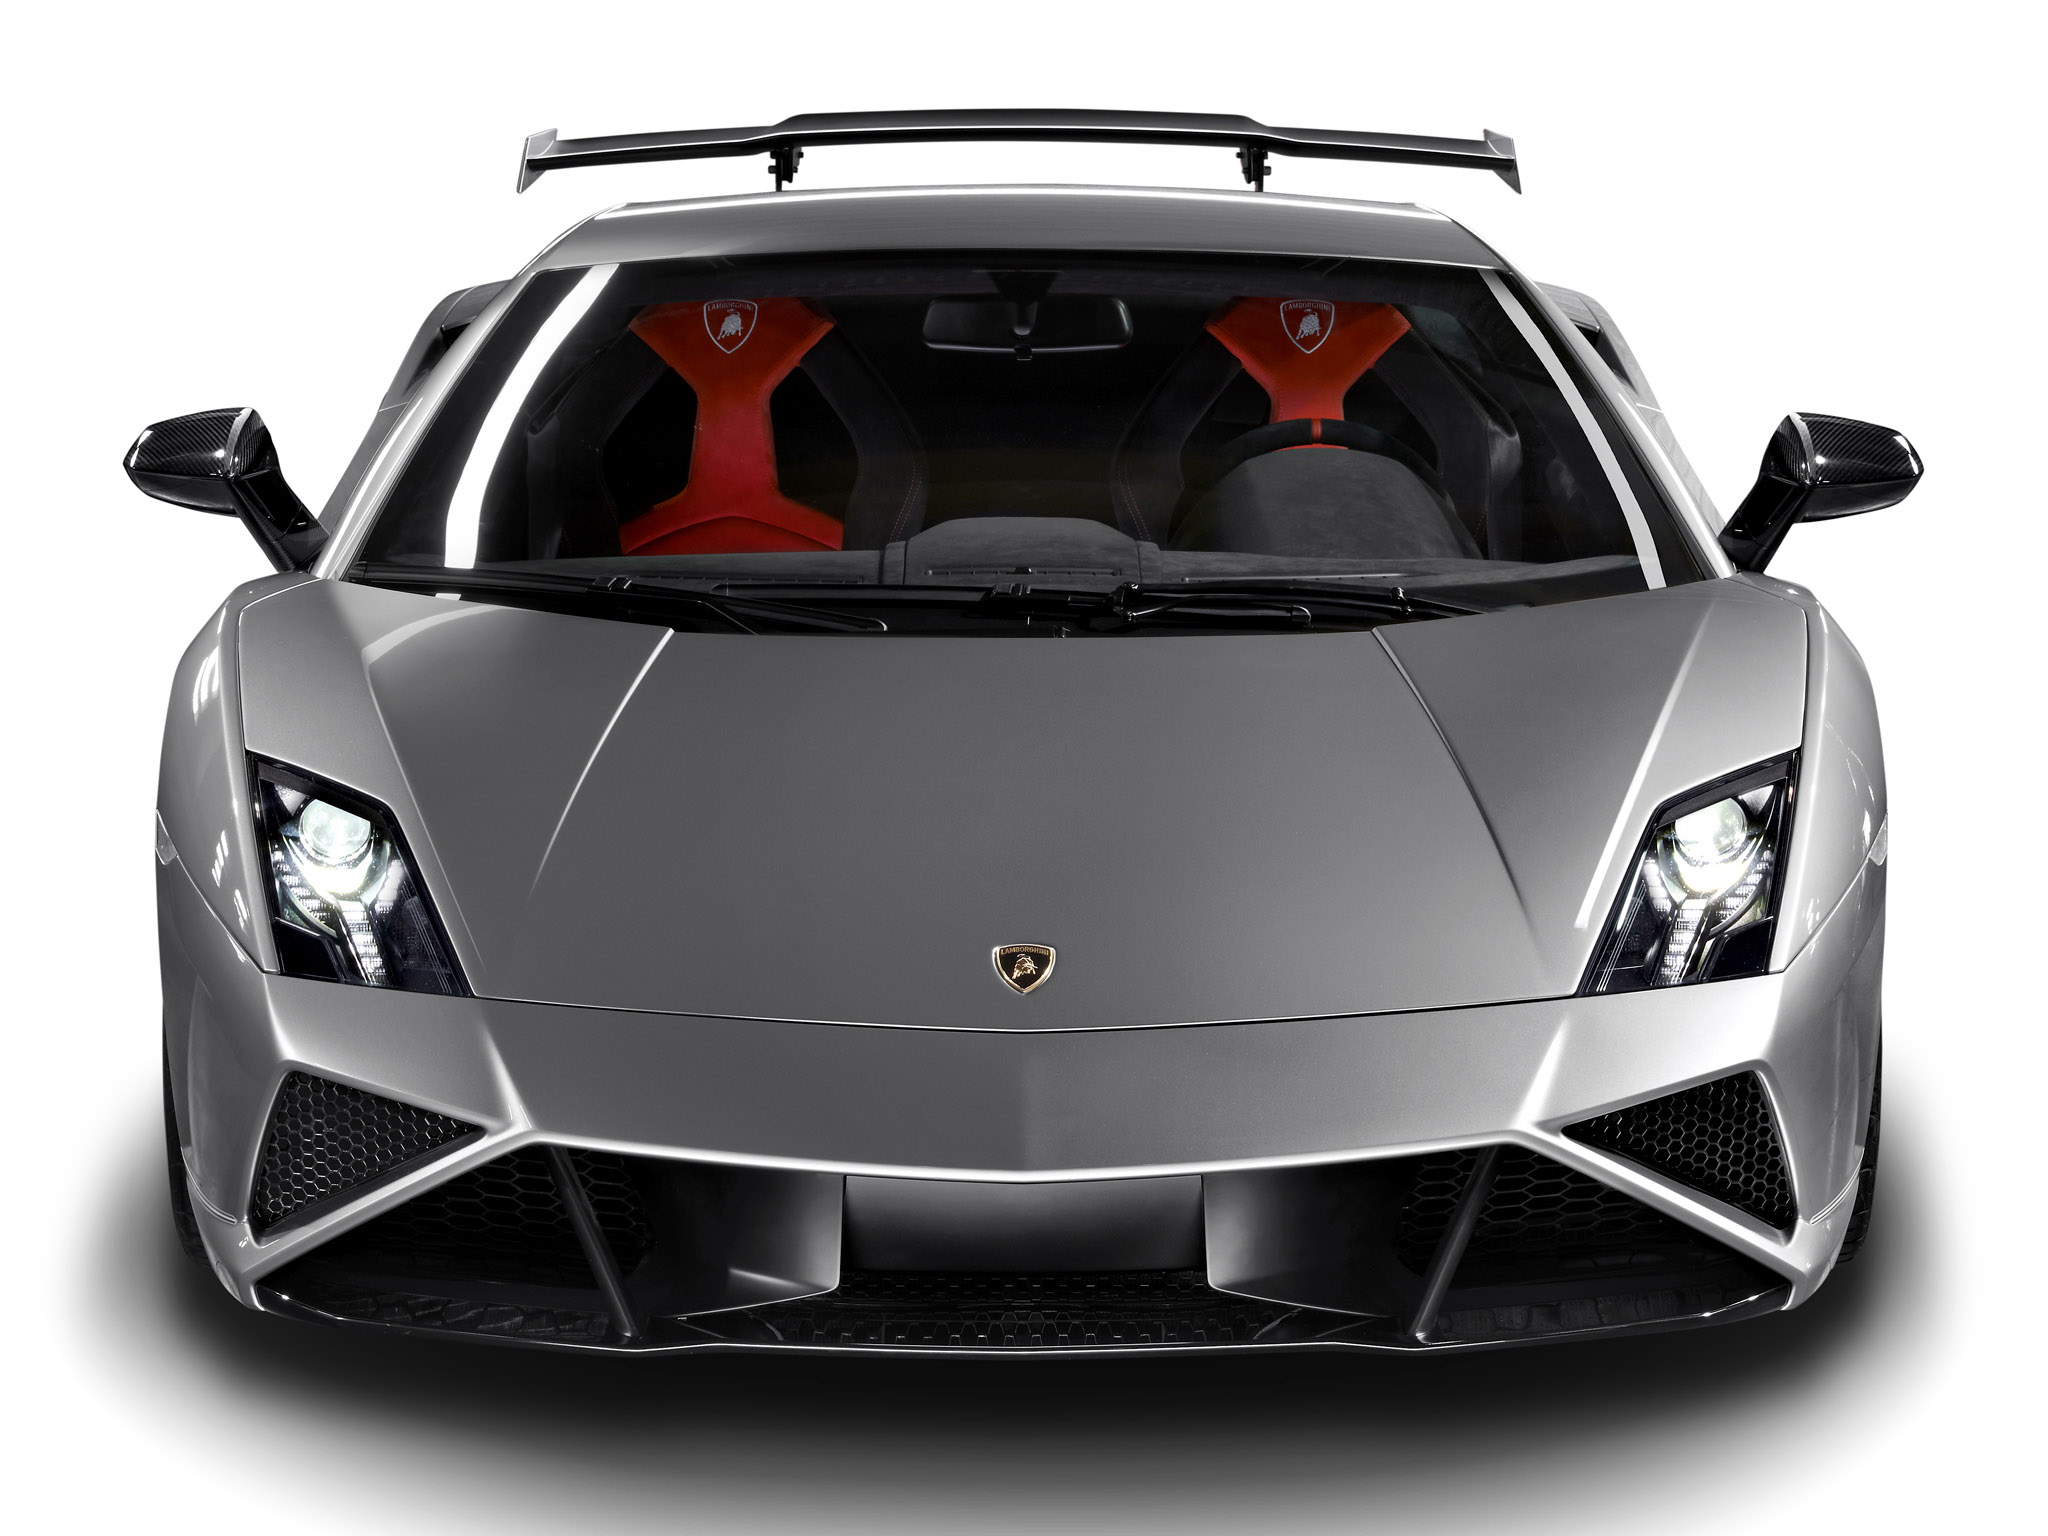 2013, Lamborghini, Gallardo, Lp570 4, Squadra, Corse, Supercar, Supercars Wallpaper